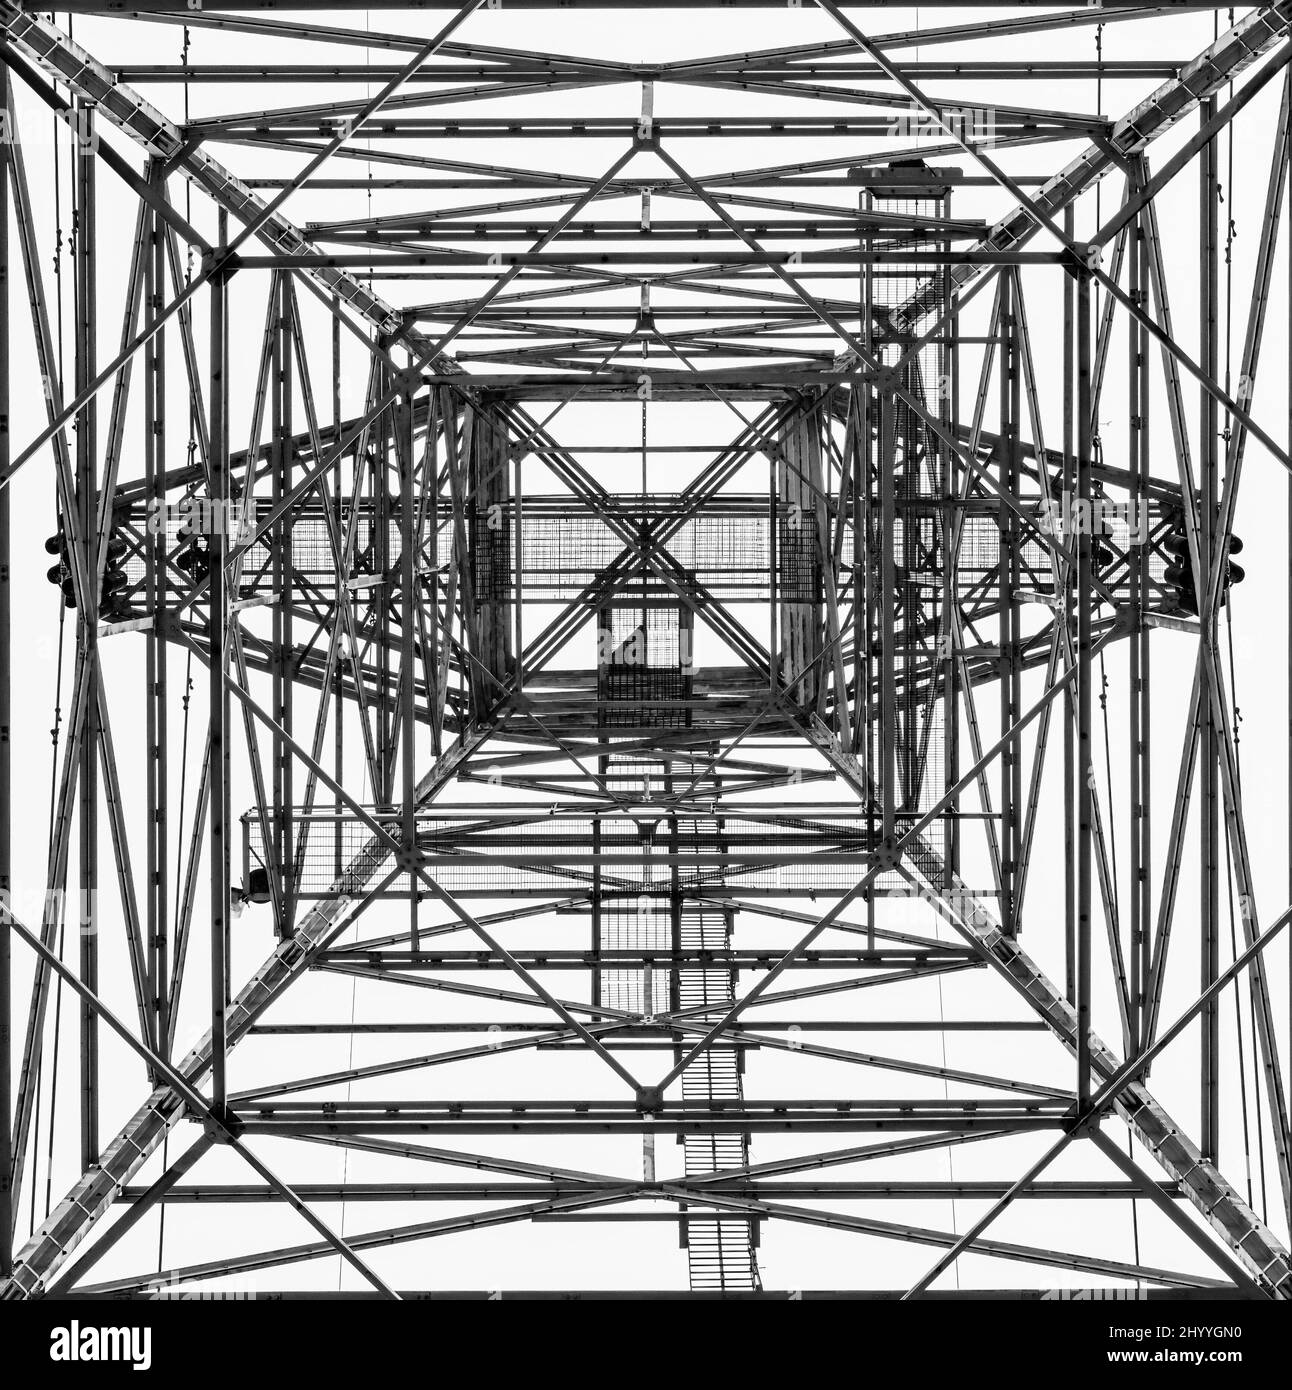 Immagine monocromatica di una torre elettrica rivolta verso l'alto che dà un aspetto astratto geometrico simile a un modello di prova Foto Stock